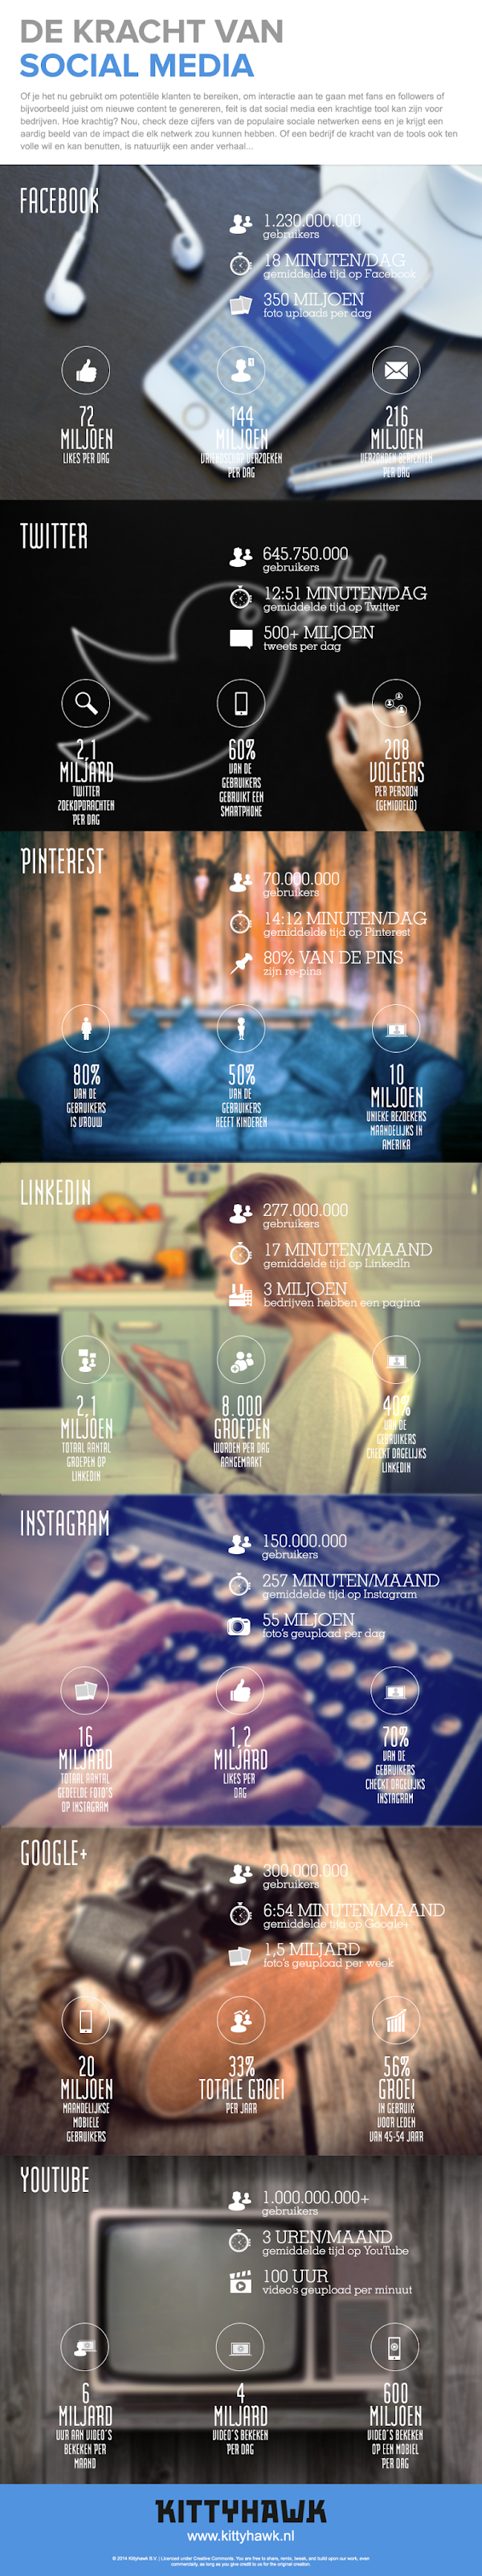 Social media statistieken